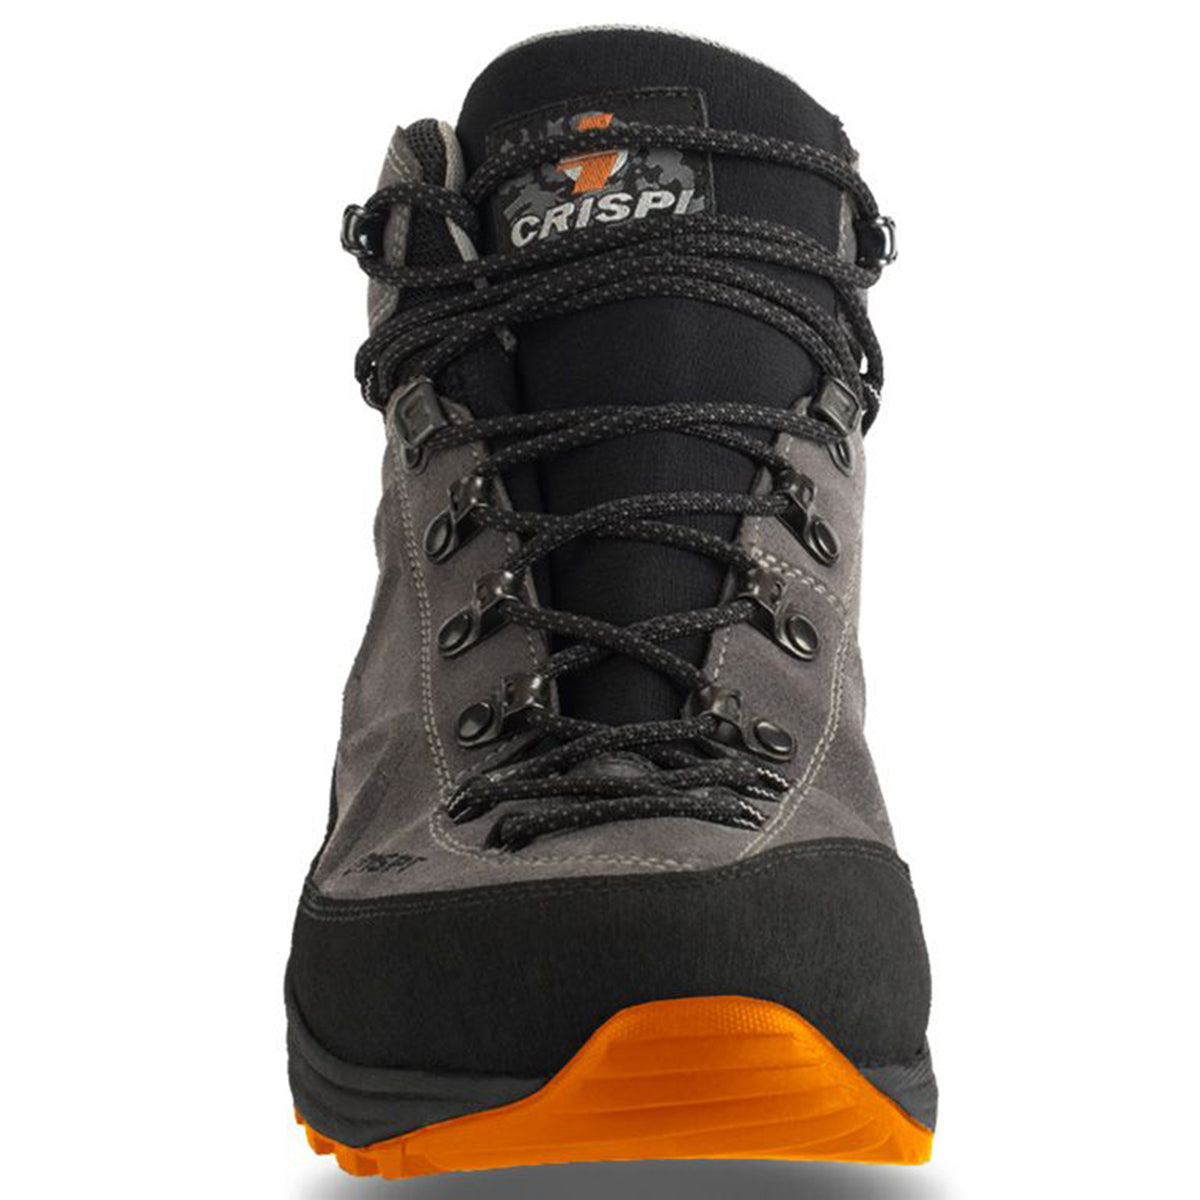 Crispi Crossover Pro Light GTX by Crispi | Footwear - goHUNT Shop